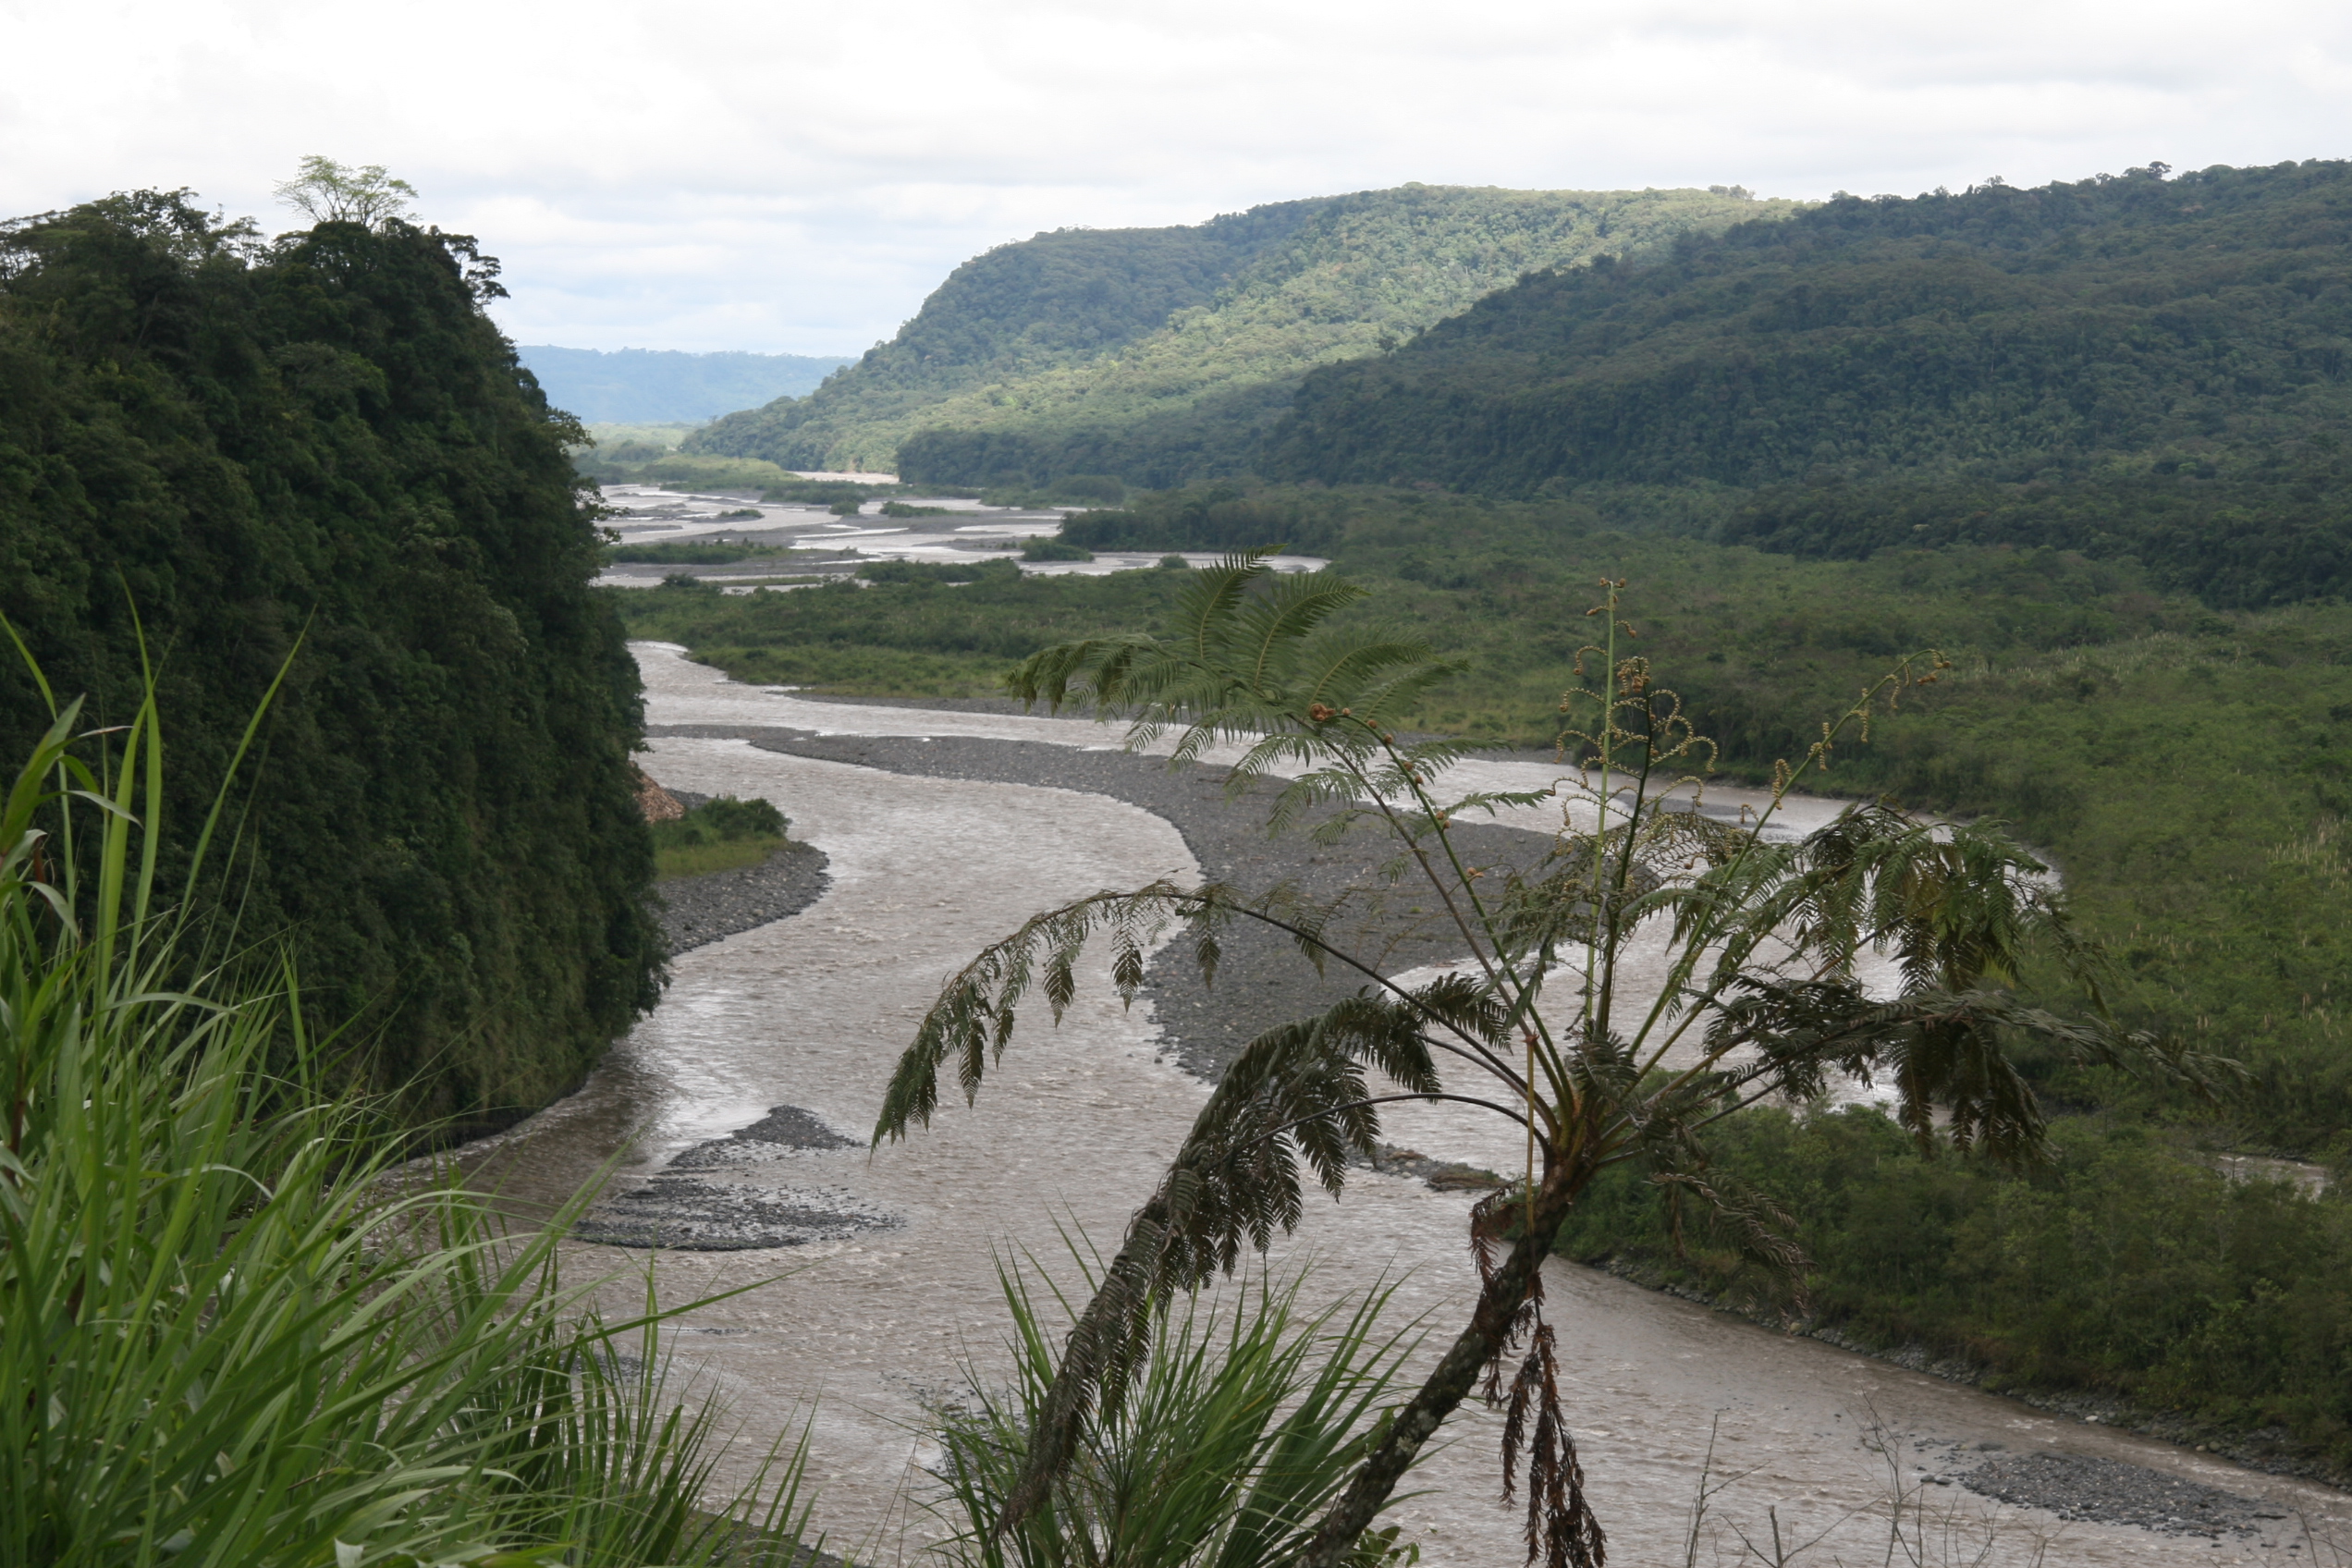 Rieka v Ekvadorskom pralese